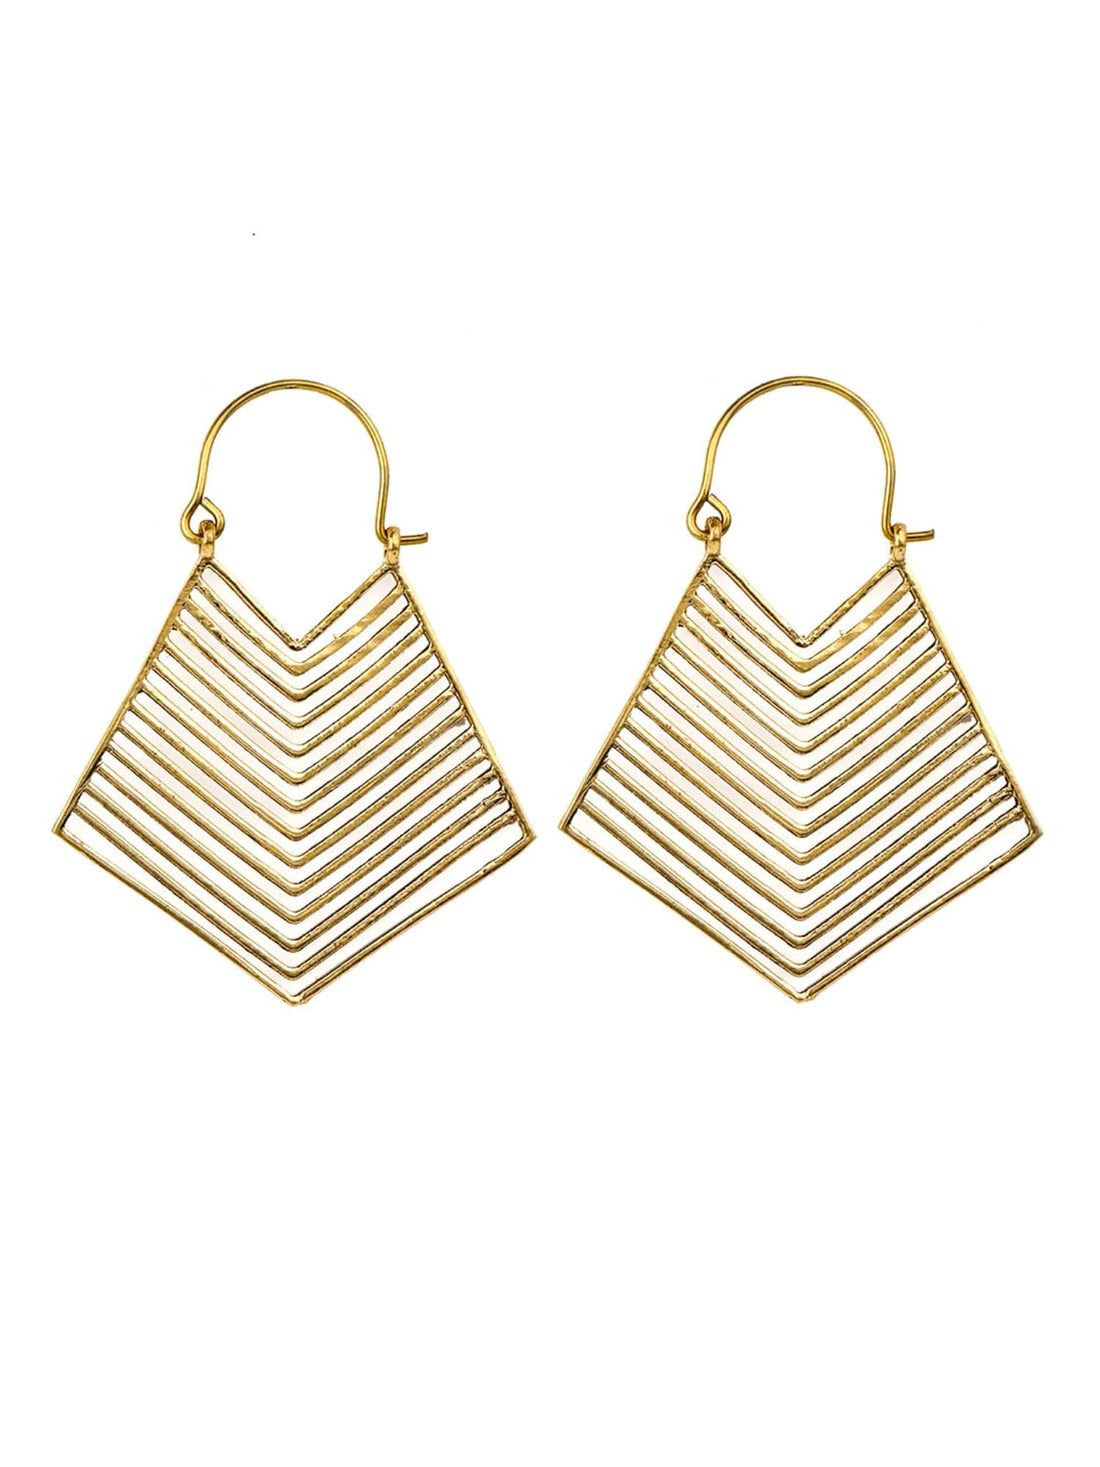 Daily Wear Hoops Earrings - Minimal Gold-Plated Brass Earrings By Studio One Love